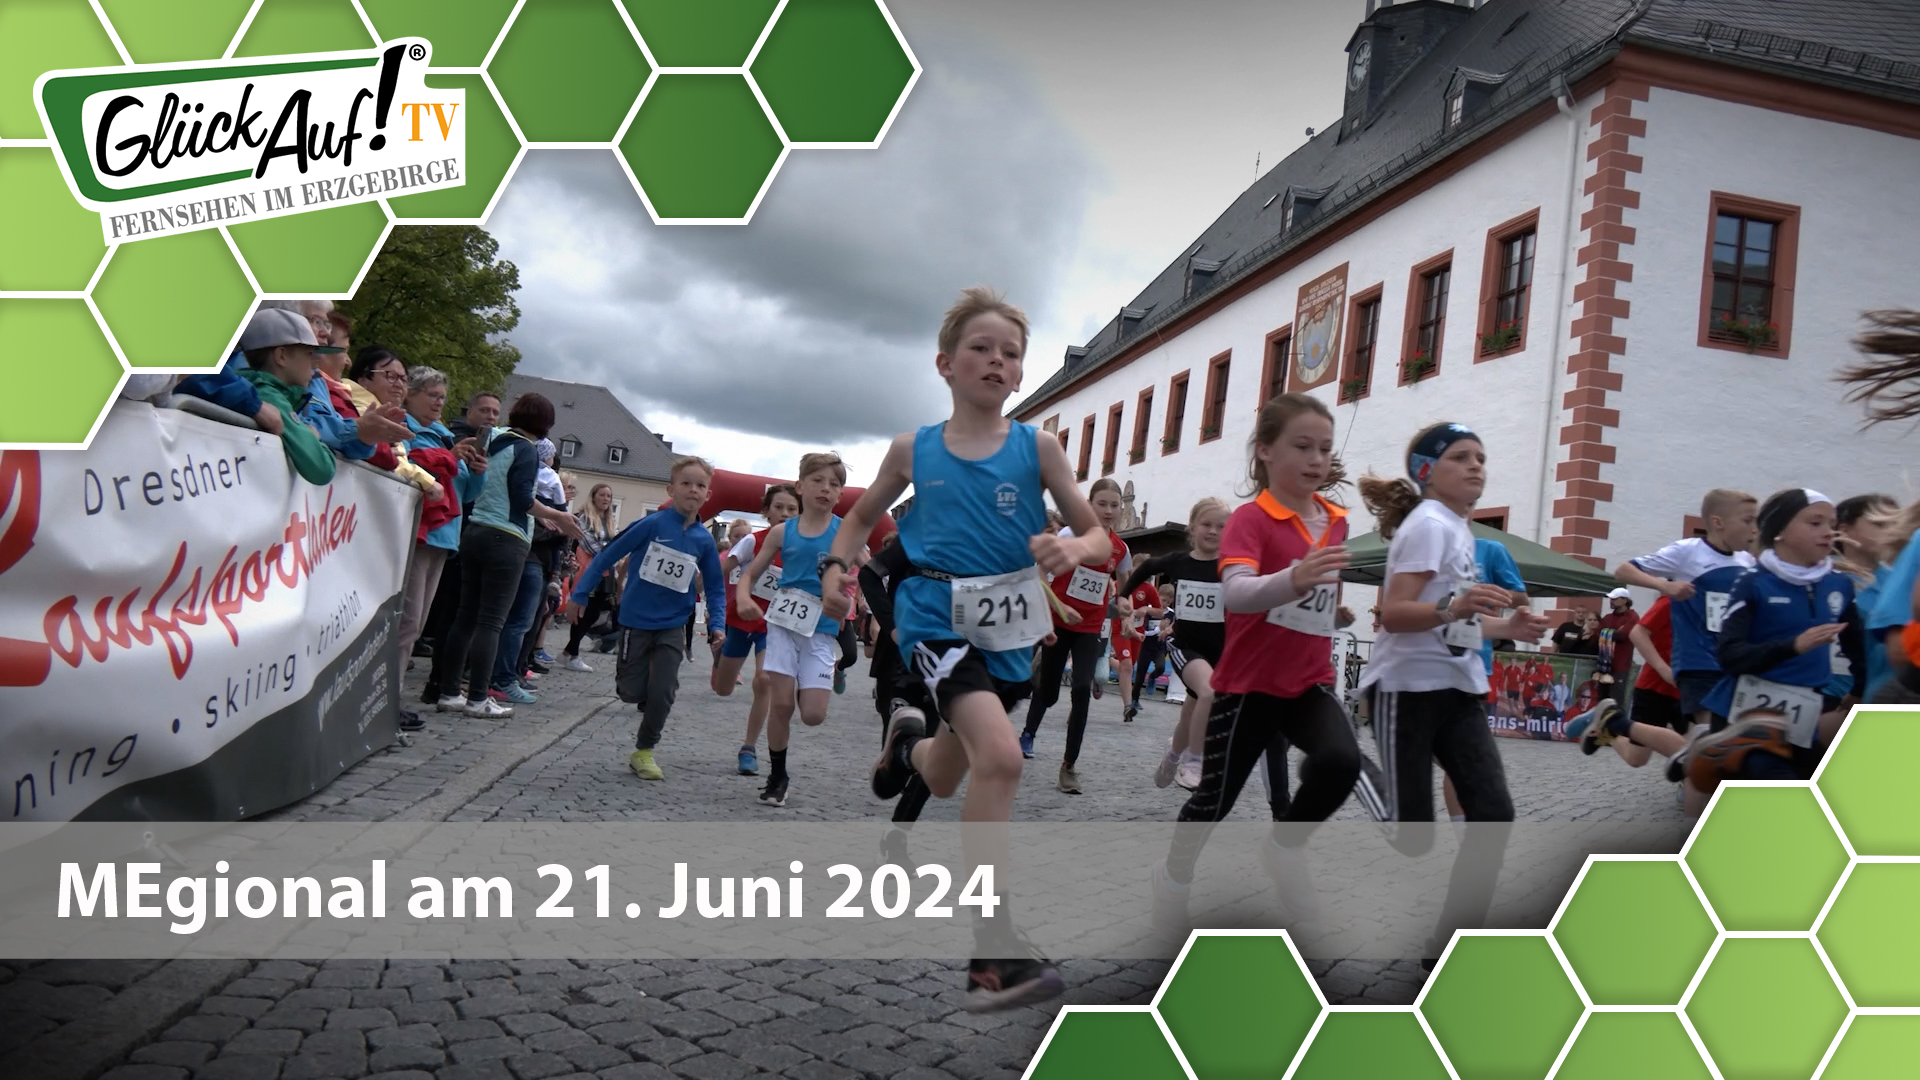 MEgional am 21. Juni 2024 mit dem 3. Stadtlauf in Marienberg